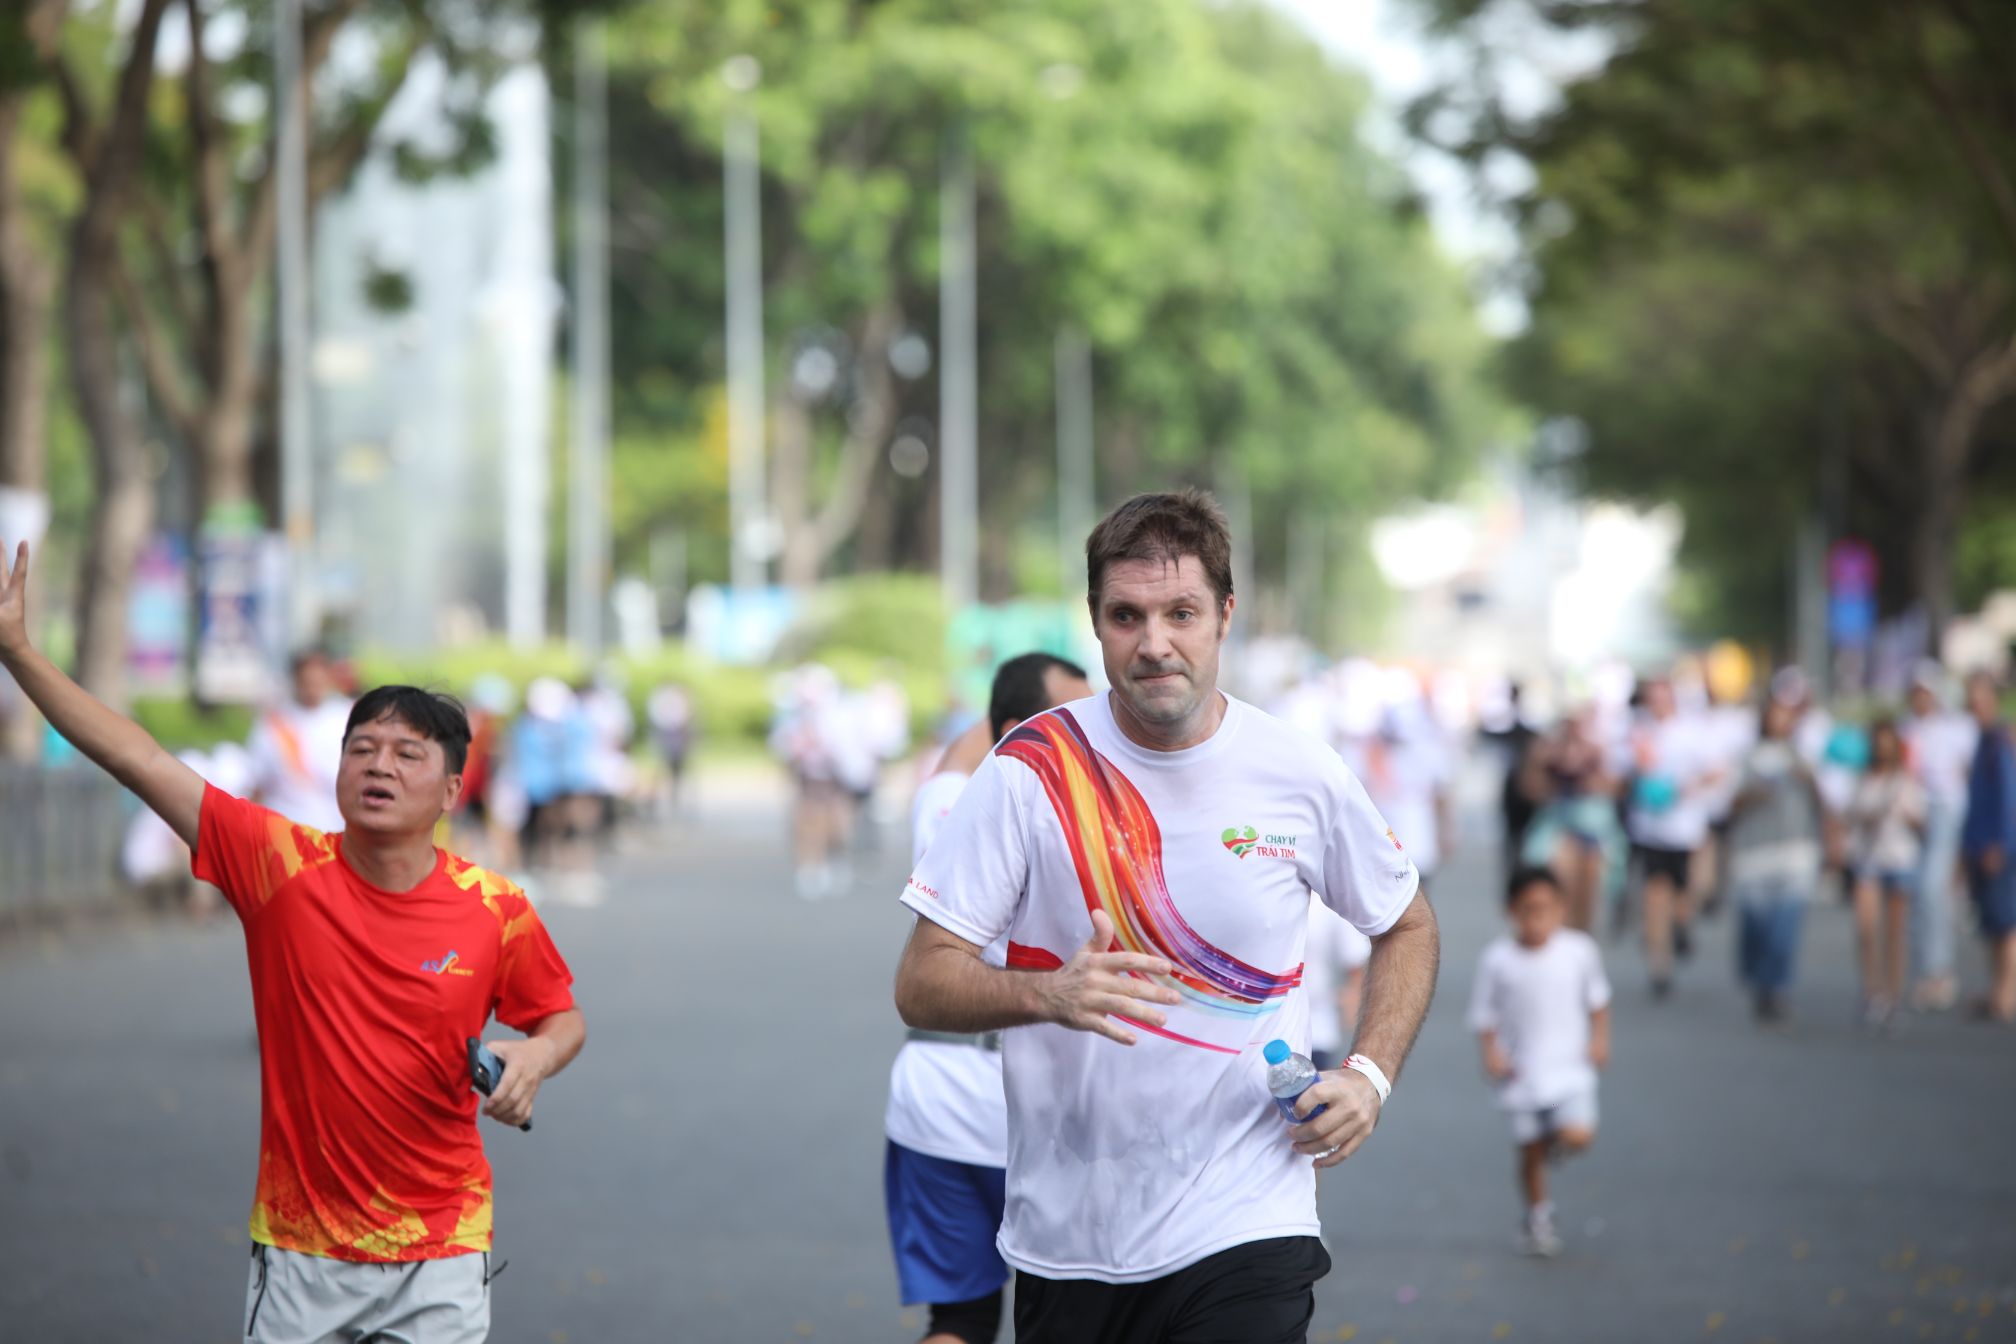 Nhiều người nước ngoài cũng hào hứng tham gia sự kiện chạy bộ gây quỹ từ thiện đầy ý nghĩa Chạy Vì Trái Tim 2023 vận động được hơn 5 tỷ đồng giúp đỡ bệnh nhân tim bẩm sinh